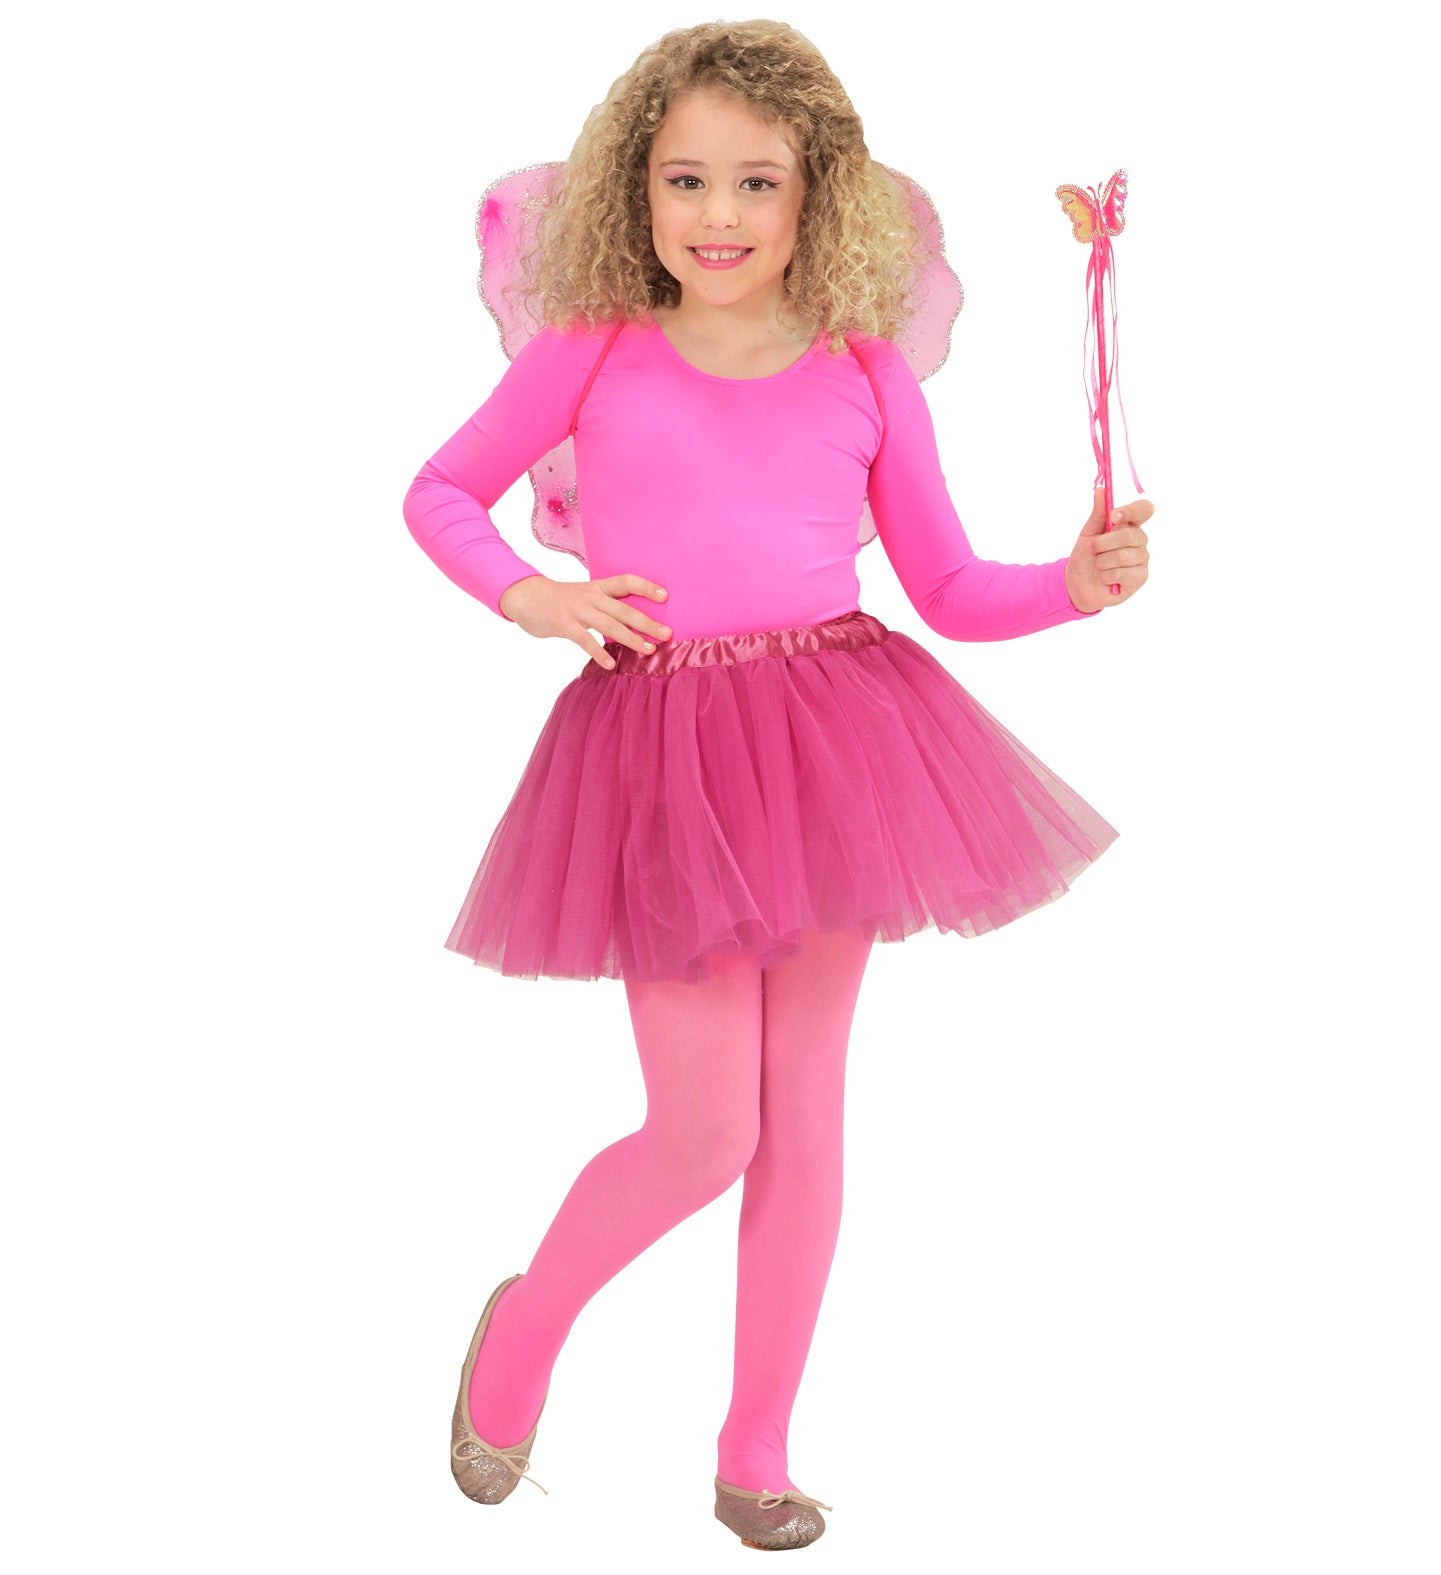 Magic Fairy costume Set for Children